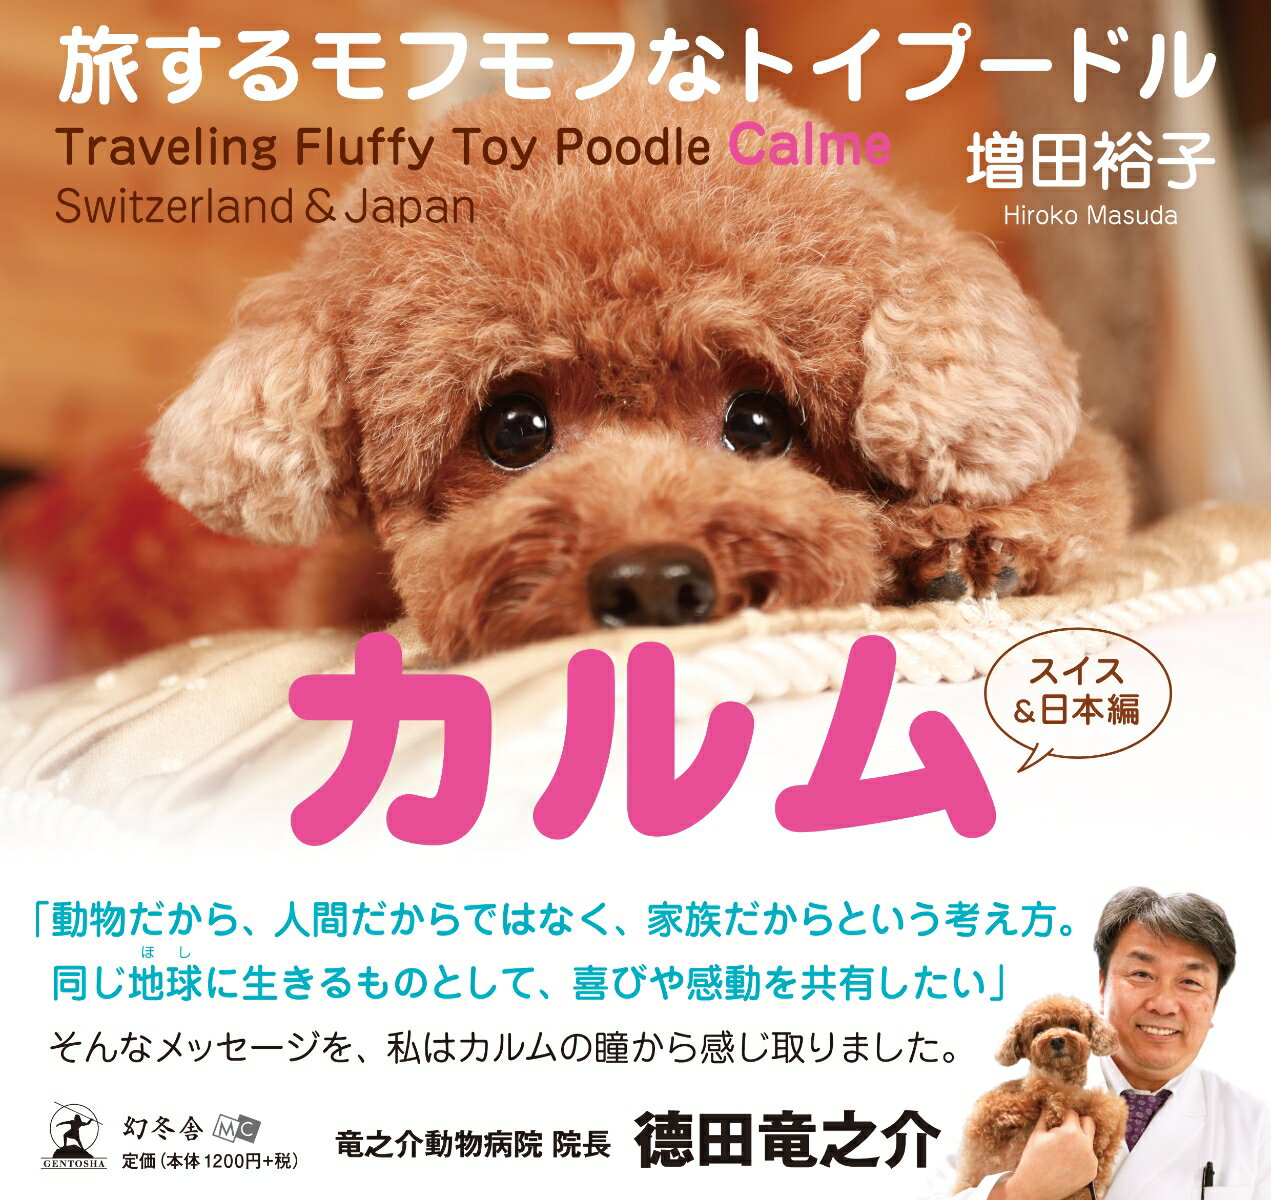 「ペット同伴お断り」「犬の散歩禁止」犬と一緒だと制限の多い日本。「犬は犬。だけど家族の一員」どこへ行くにも一緒でリードのいらないスイス。モフモフのカルムに癒されながらも、人と犬とのあり方を問いかける写真集。